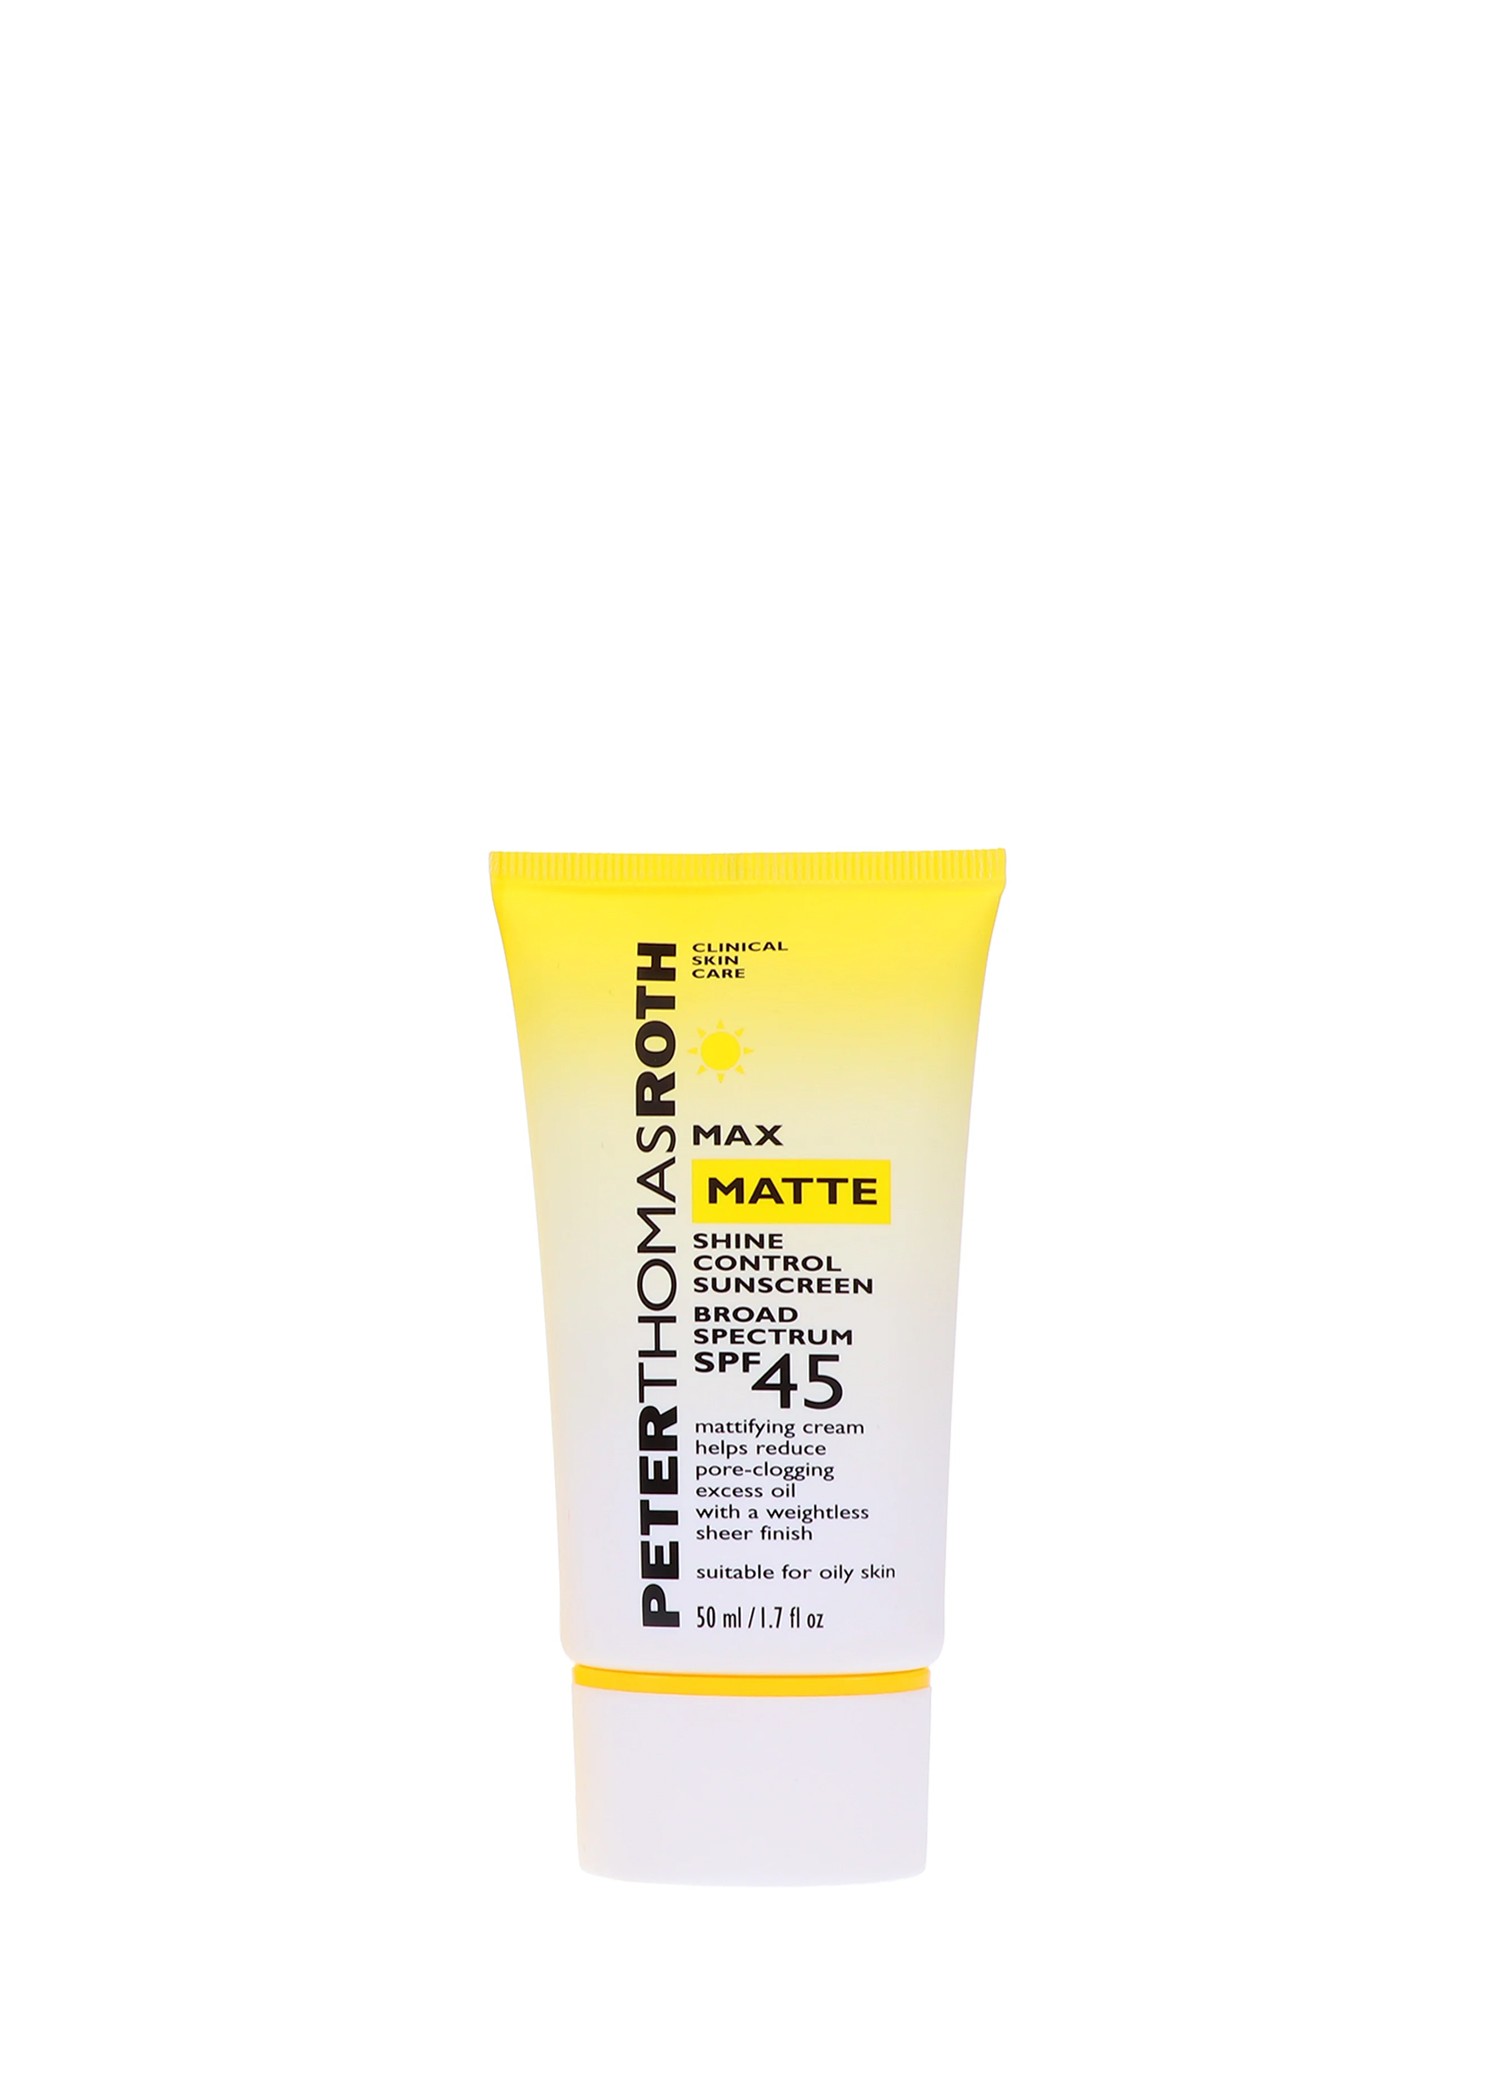 Max Matte Shine Control Sunscreen Broad Spectrum SPF 45 50 ml